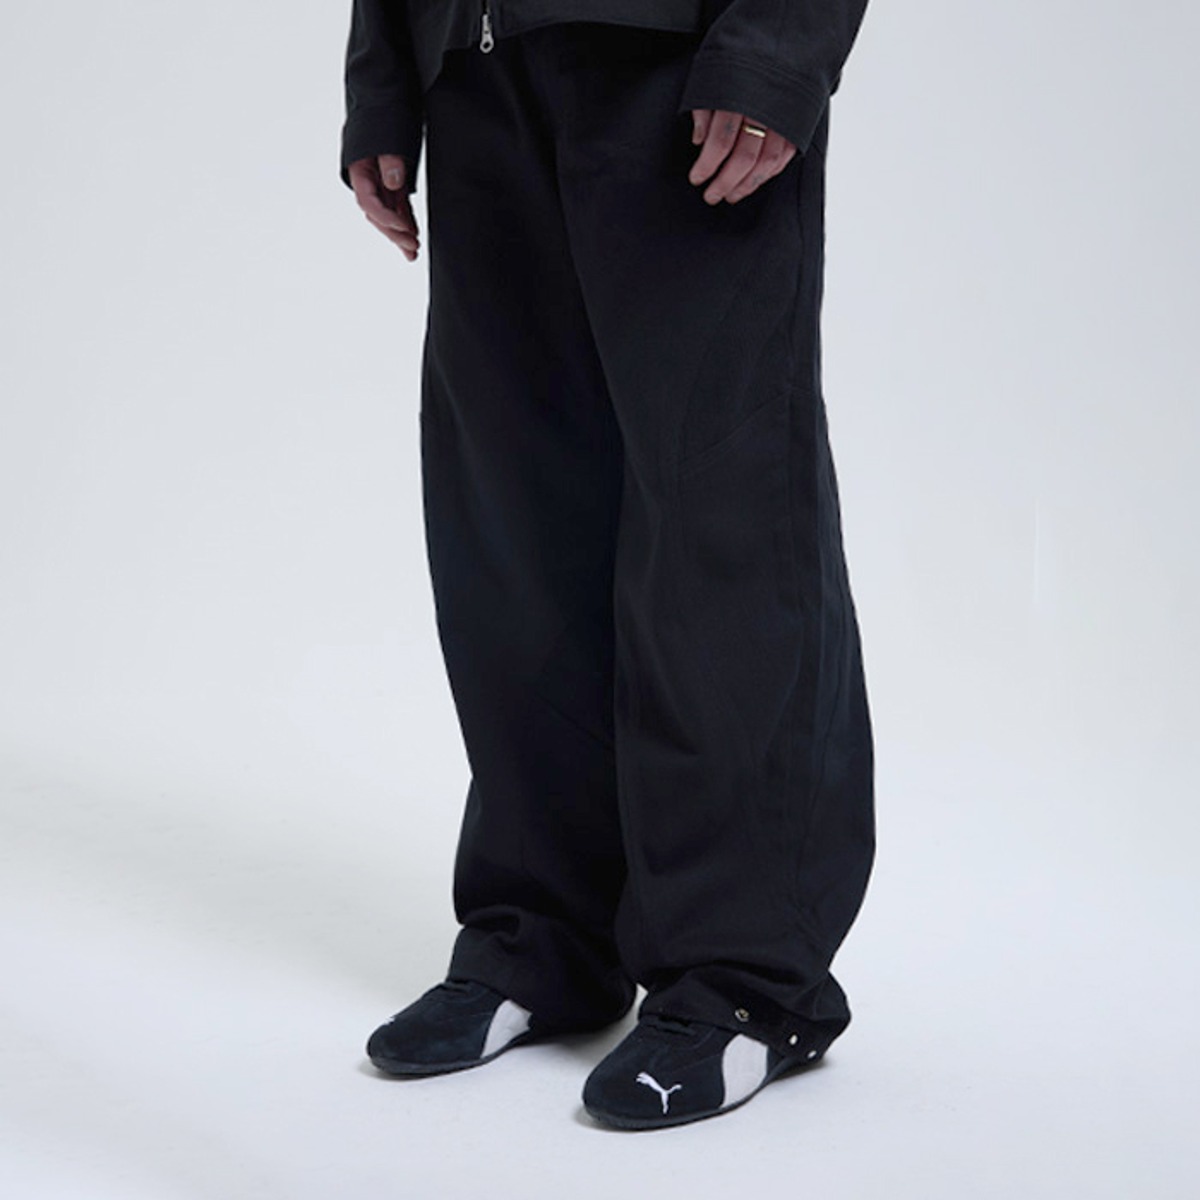 TCM line pants (black)